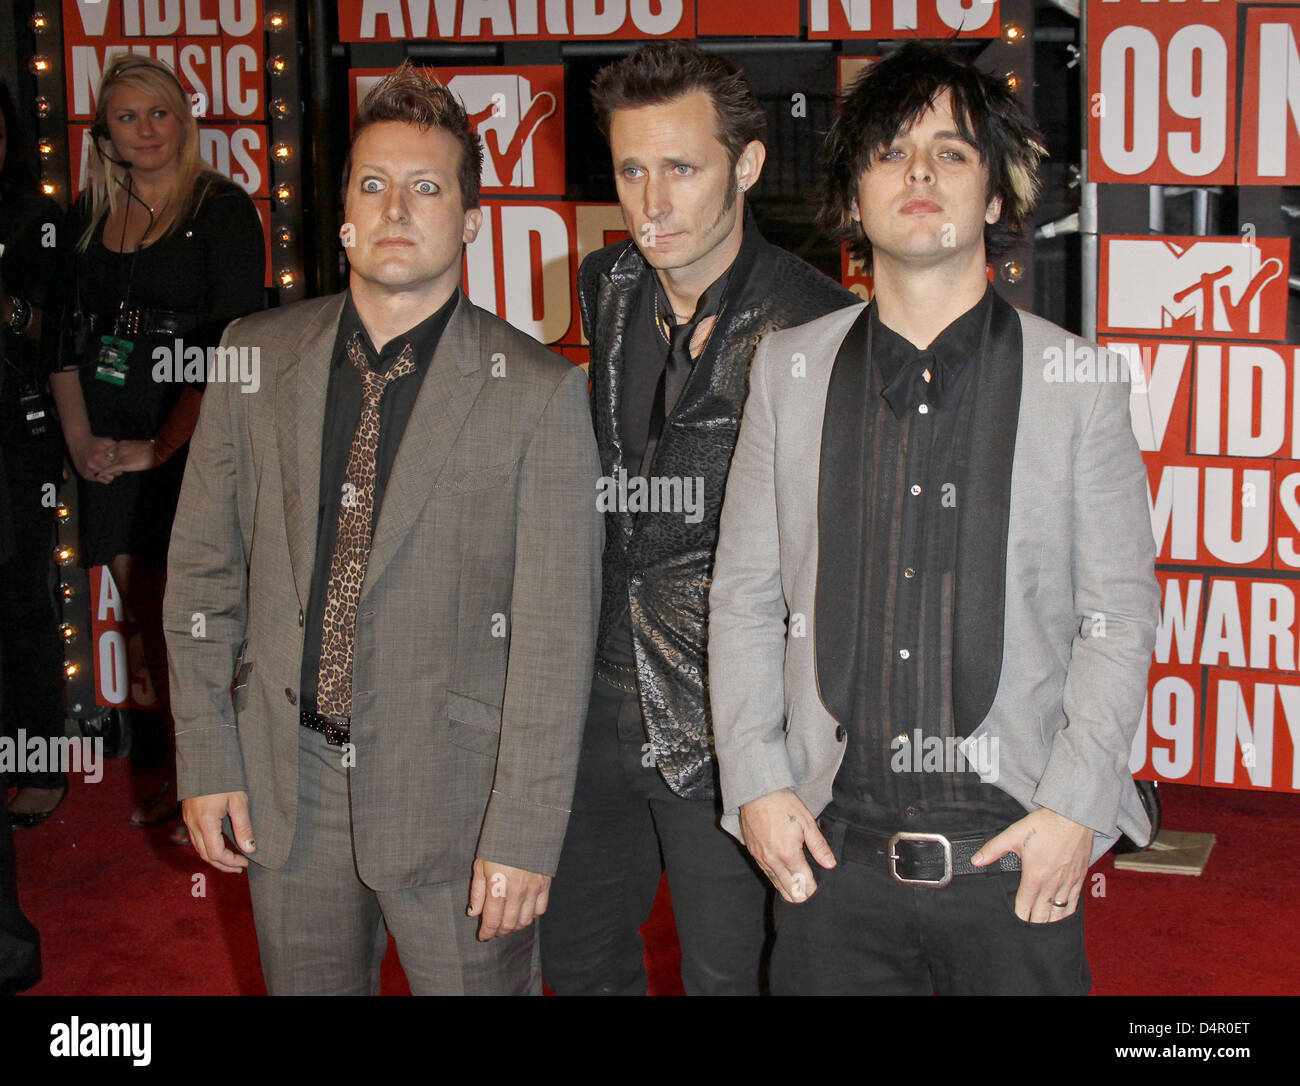 Billie Joe Armstrong (R), Mike Dirnt (C) und Tre Cool US Punkrock Band? Green Day? kommen Sie für die MTV Video Music Awards in der Radio City Music Hall in New York, USA, 13. September 2009. Foto: Hubert Boesl Stockfoto